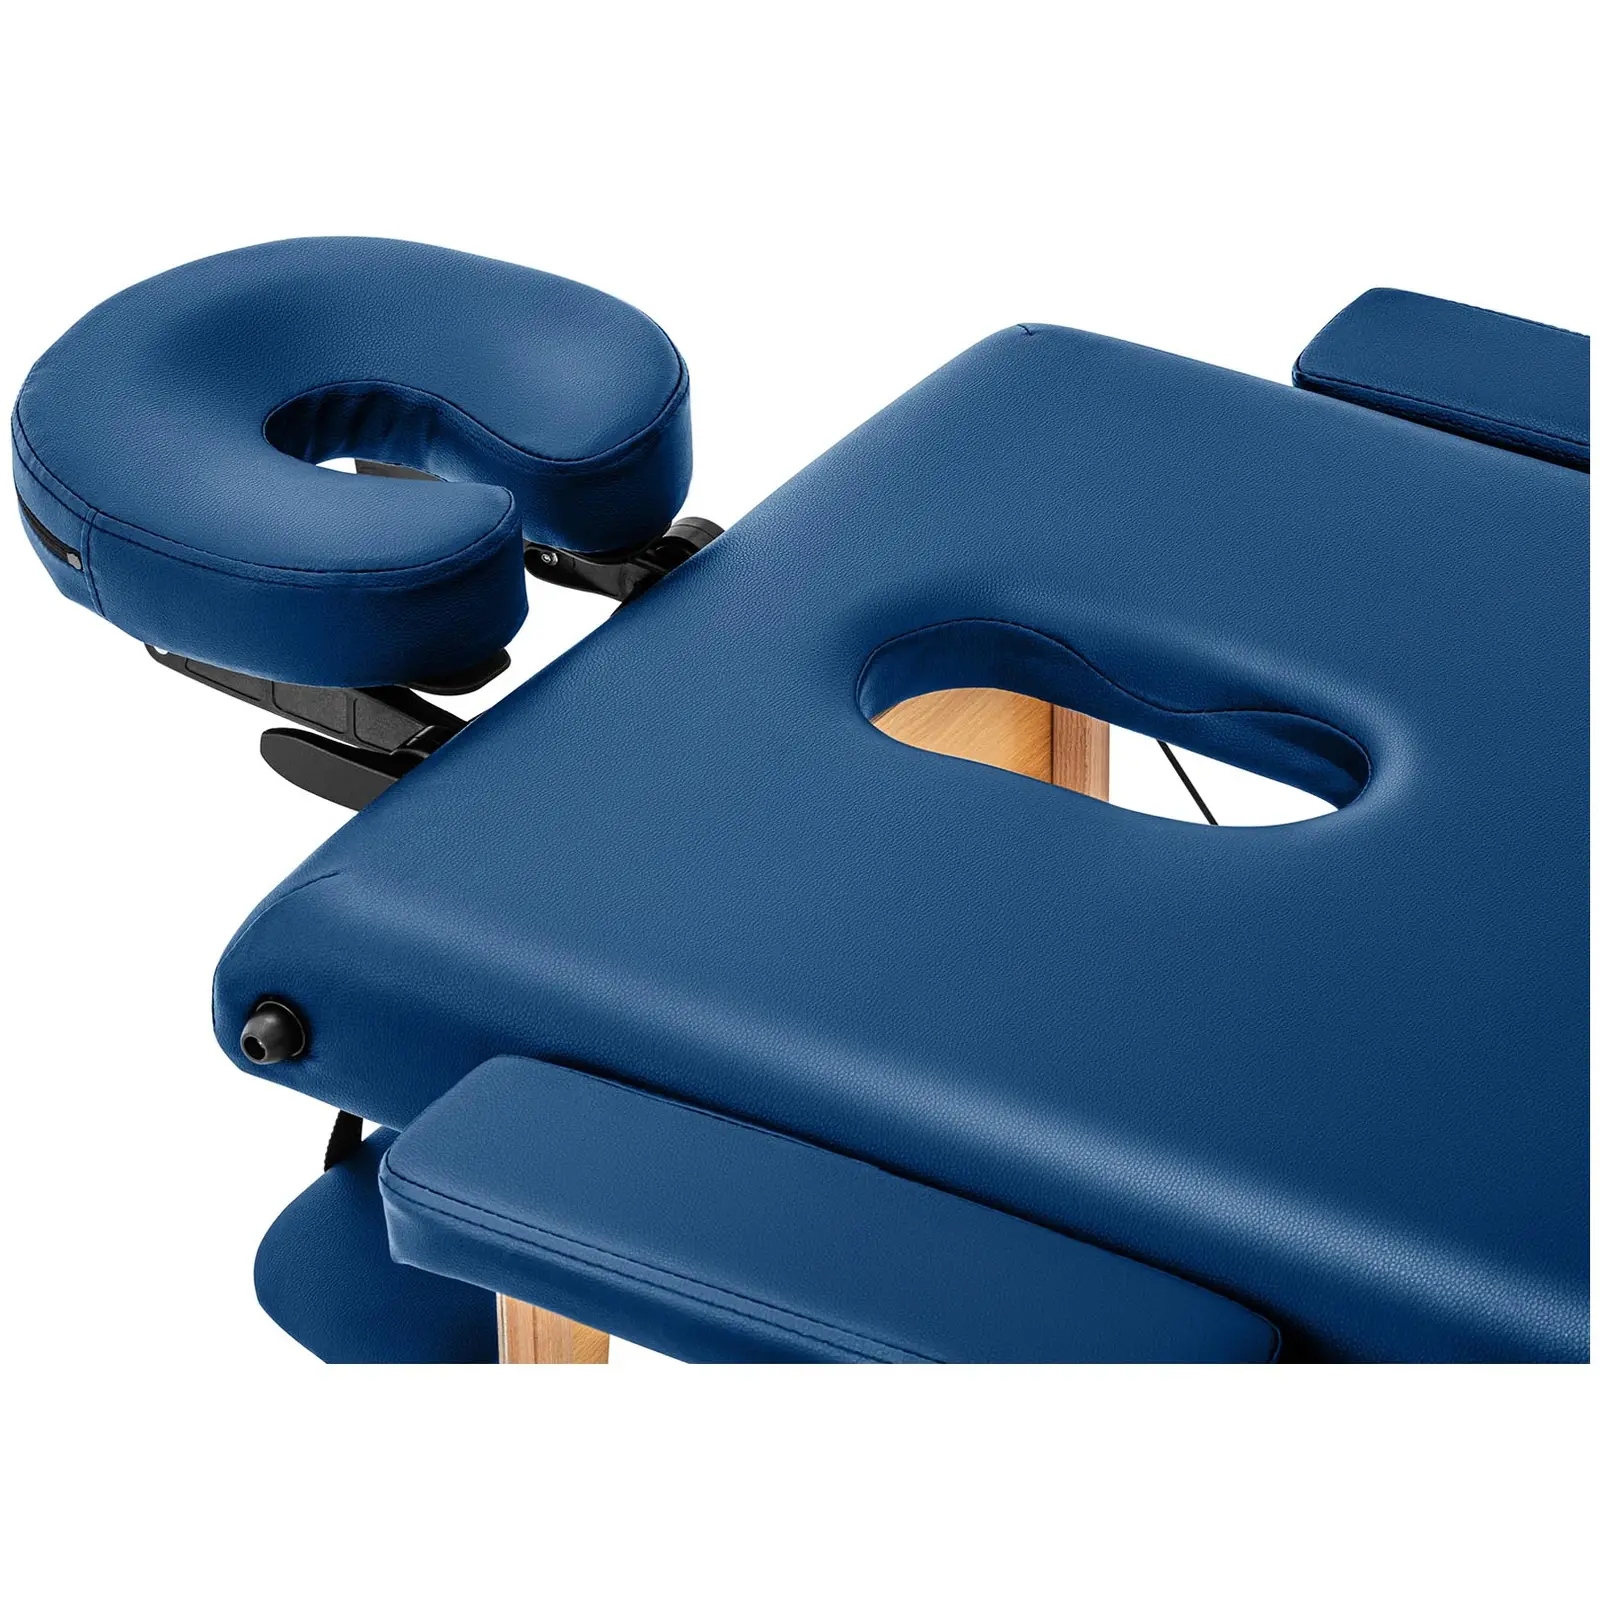 table de massage pliante - 185 x 60 x 60-85 cm - 227 kg - Bleu